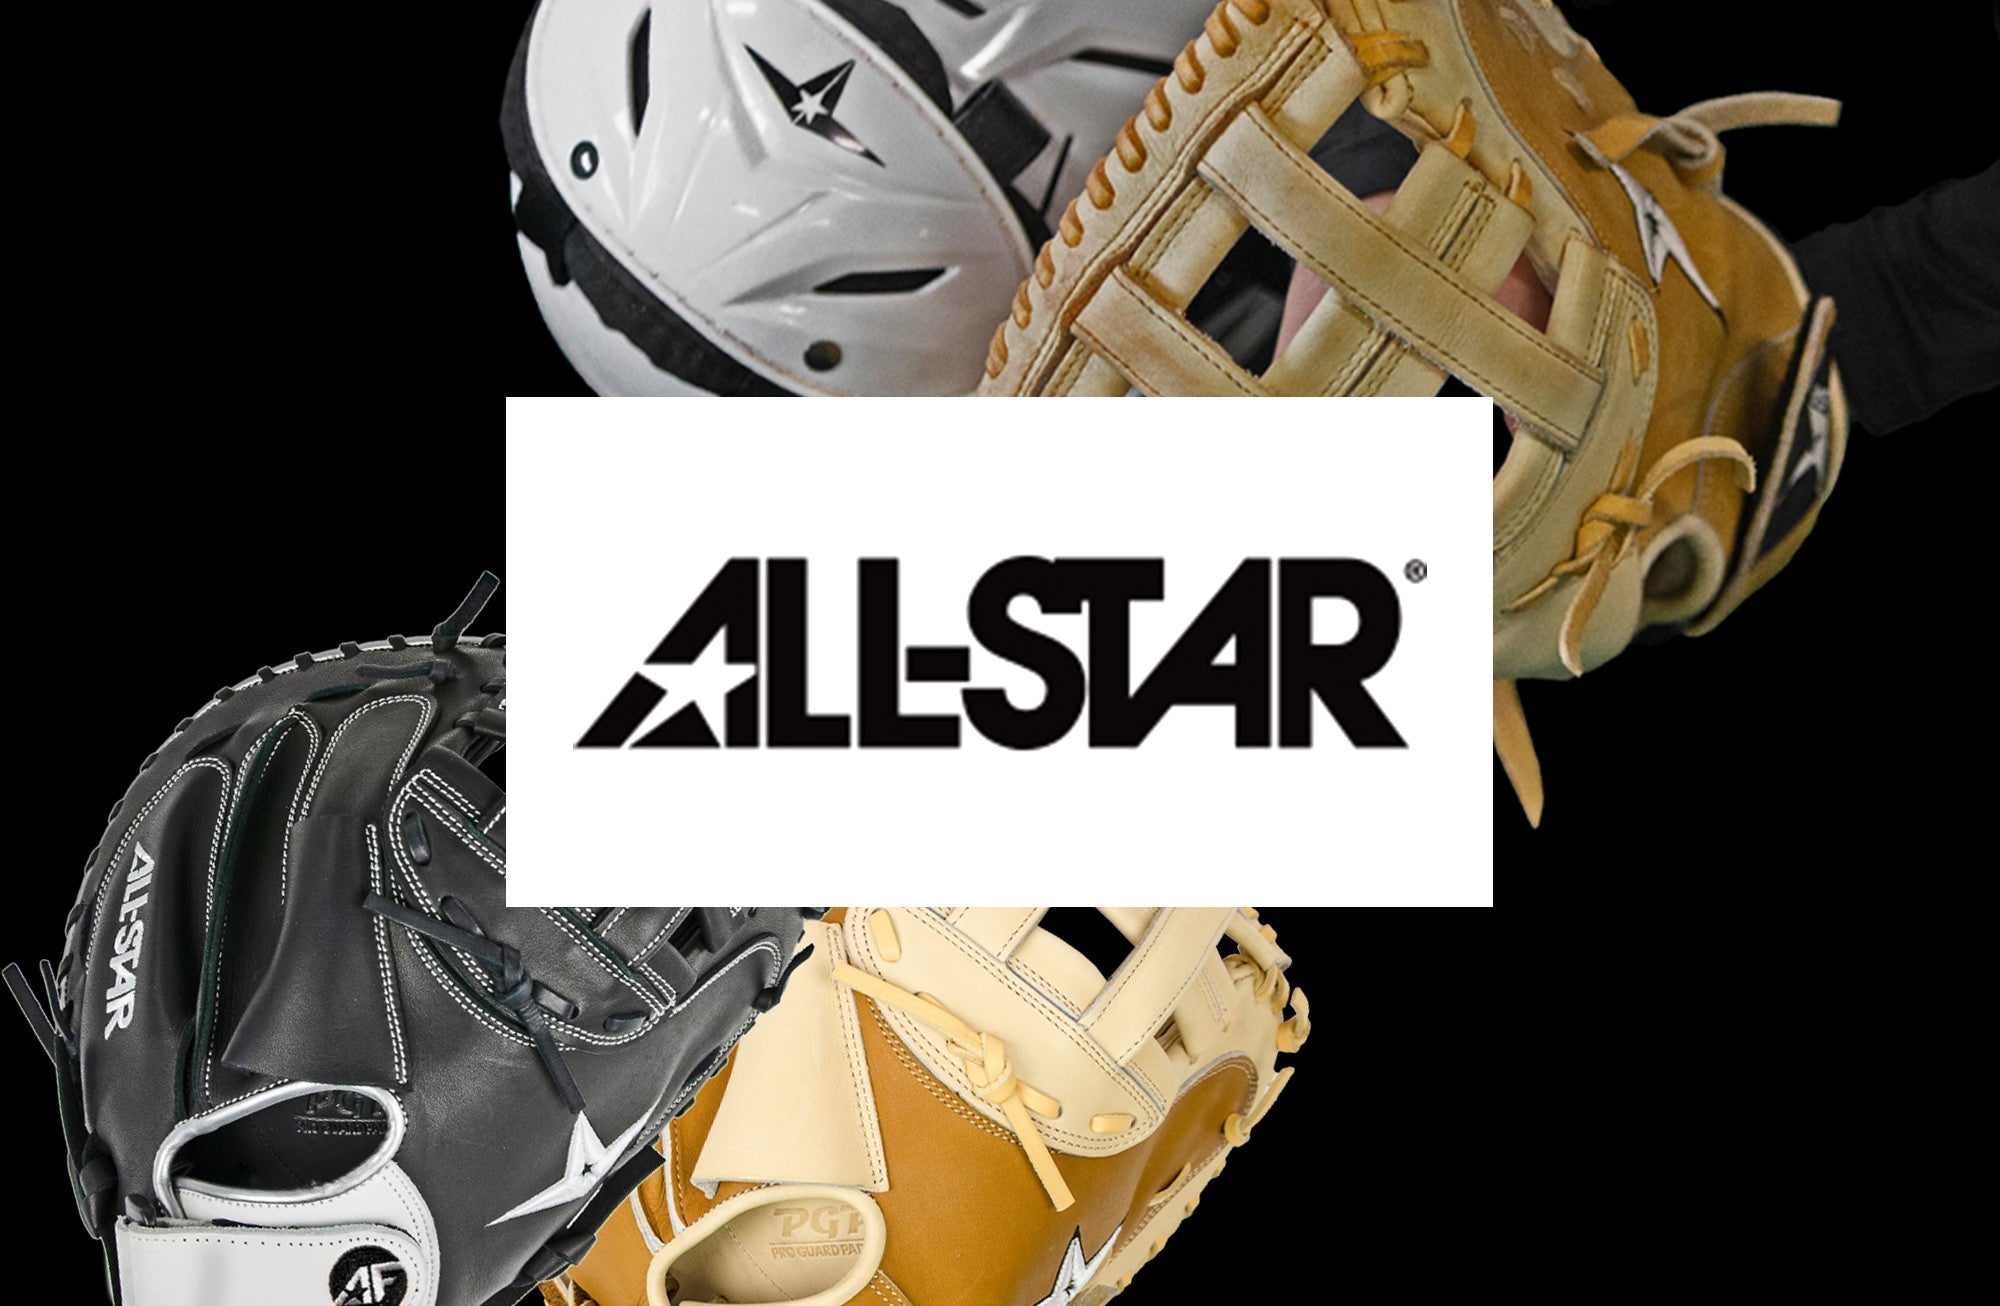 All-Star Large MVP5 Pro Catcher's Helmet, Navy